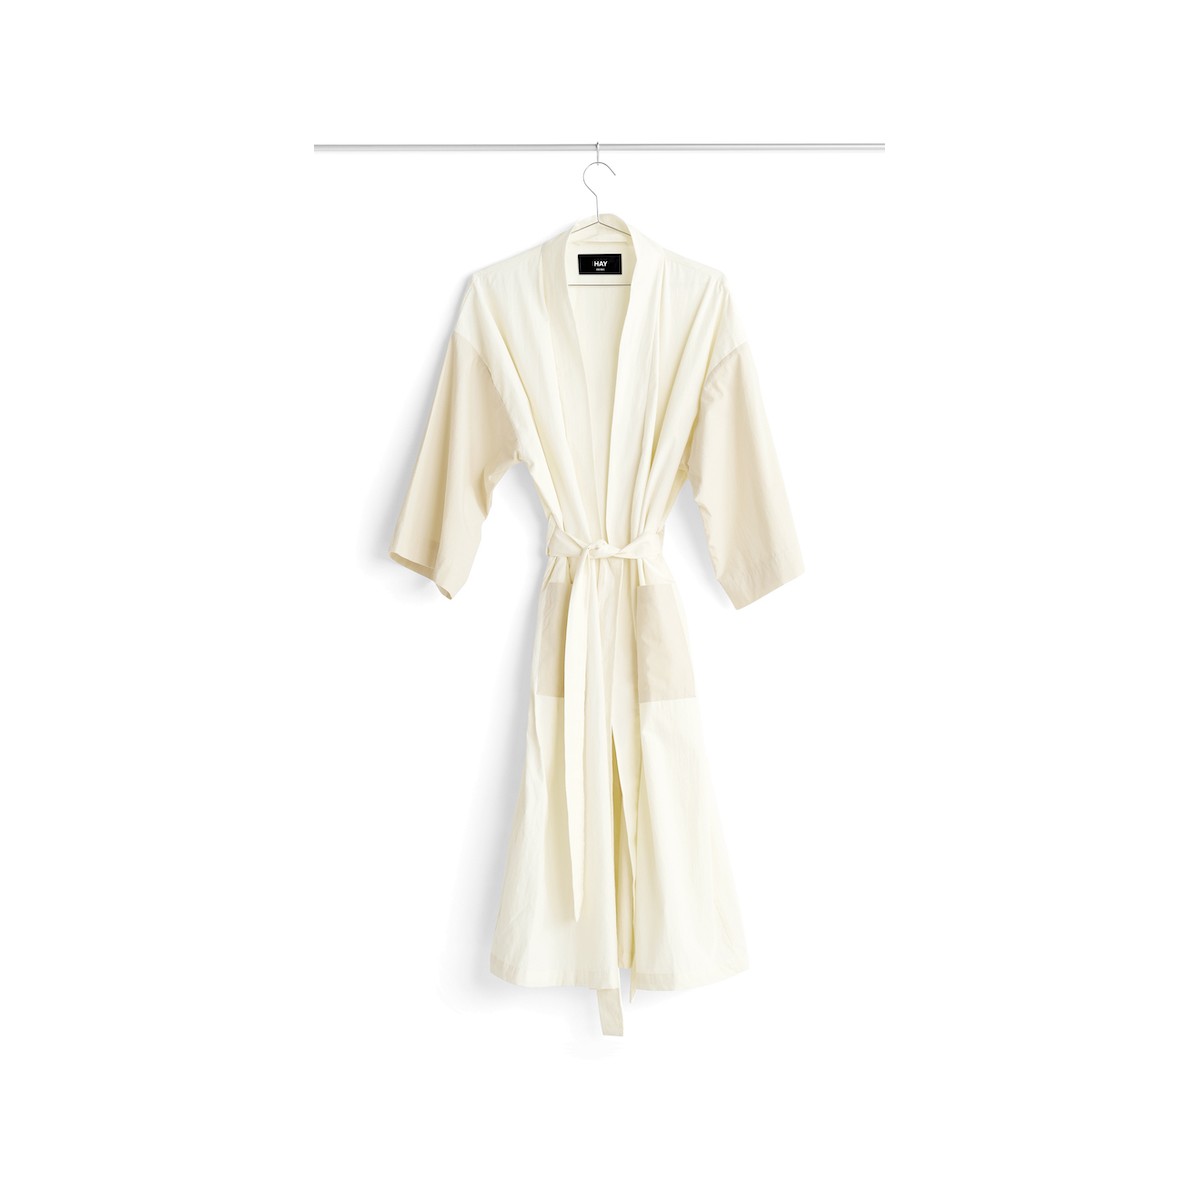 DUO Robe - Ivory - Hay bathrobe